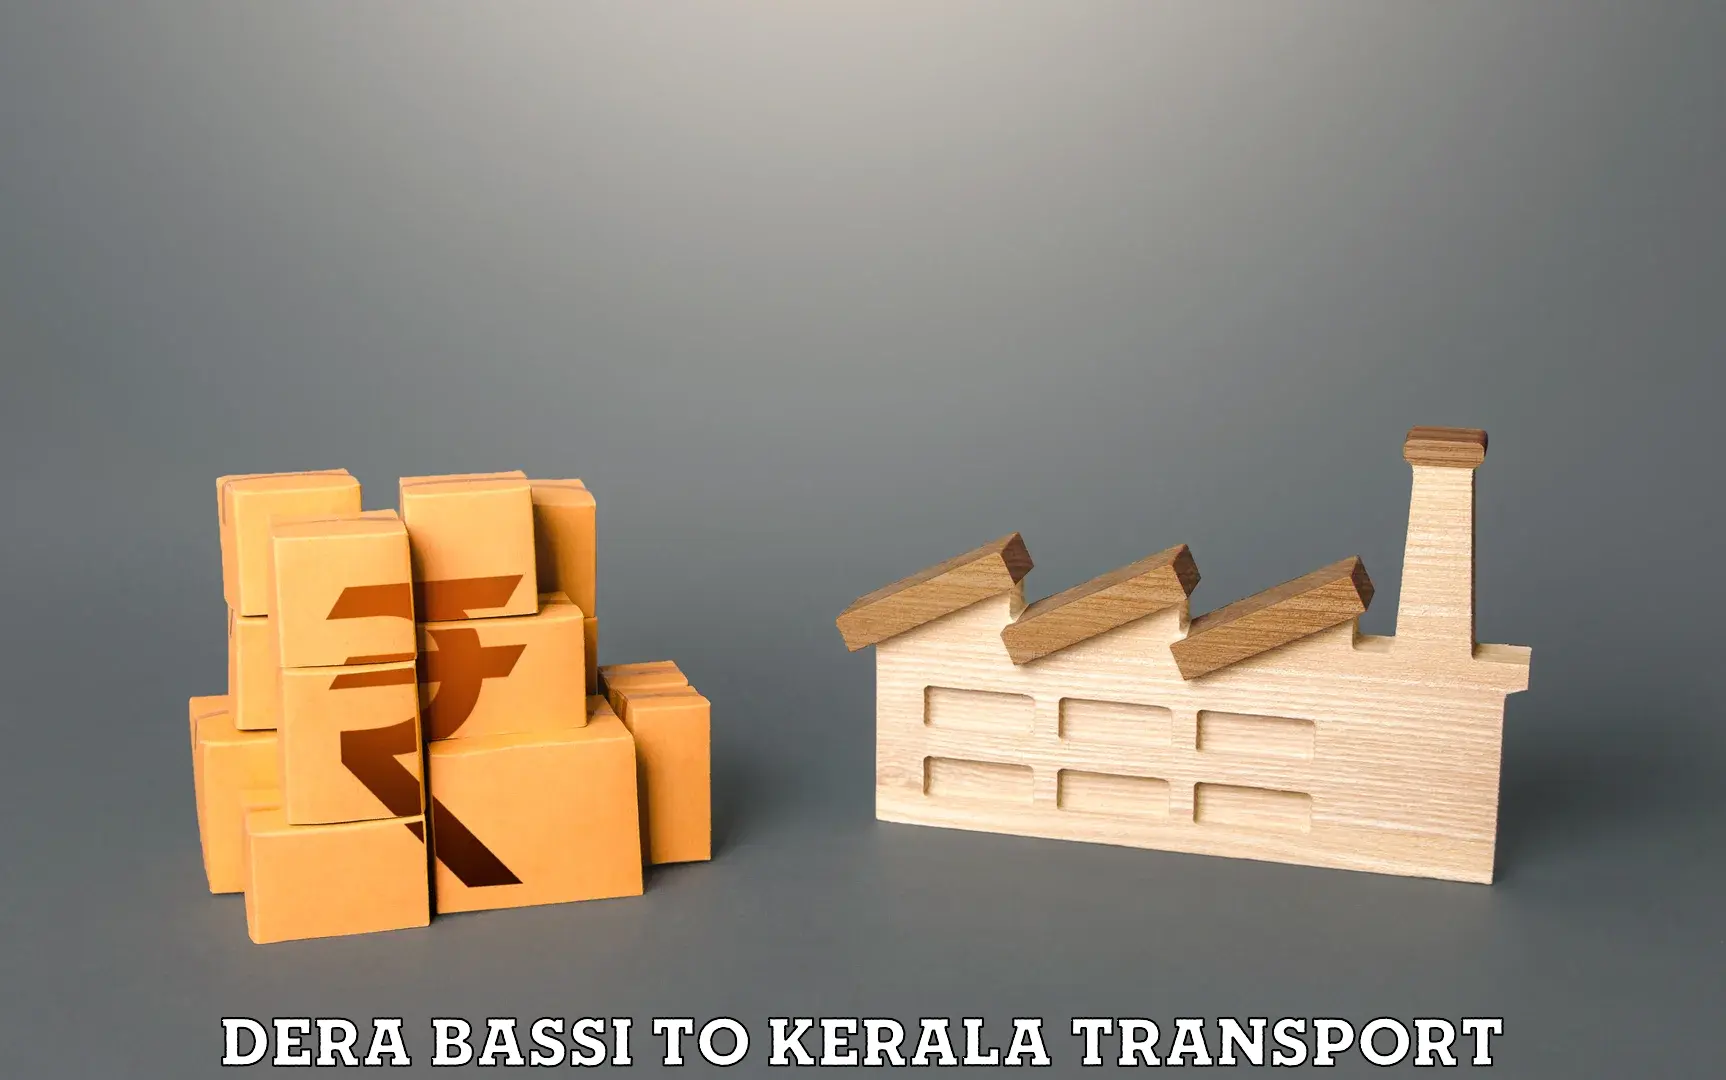 Online transport service Dera Bassi to Vaikom